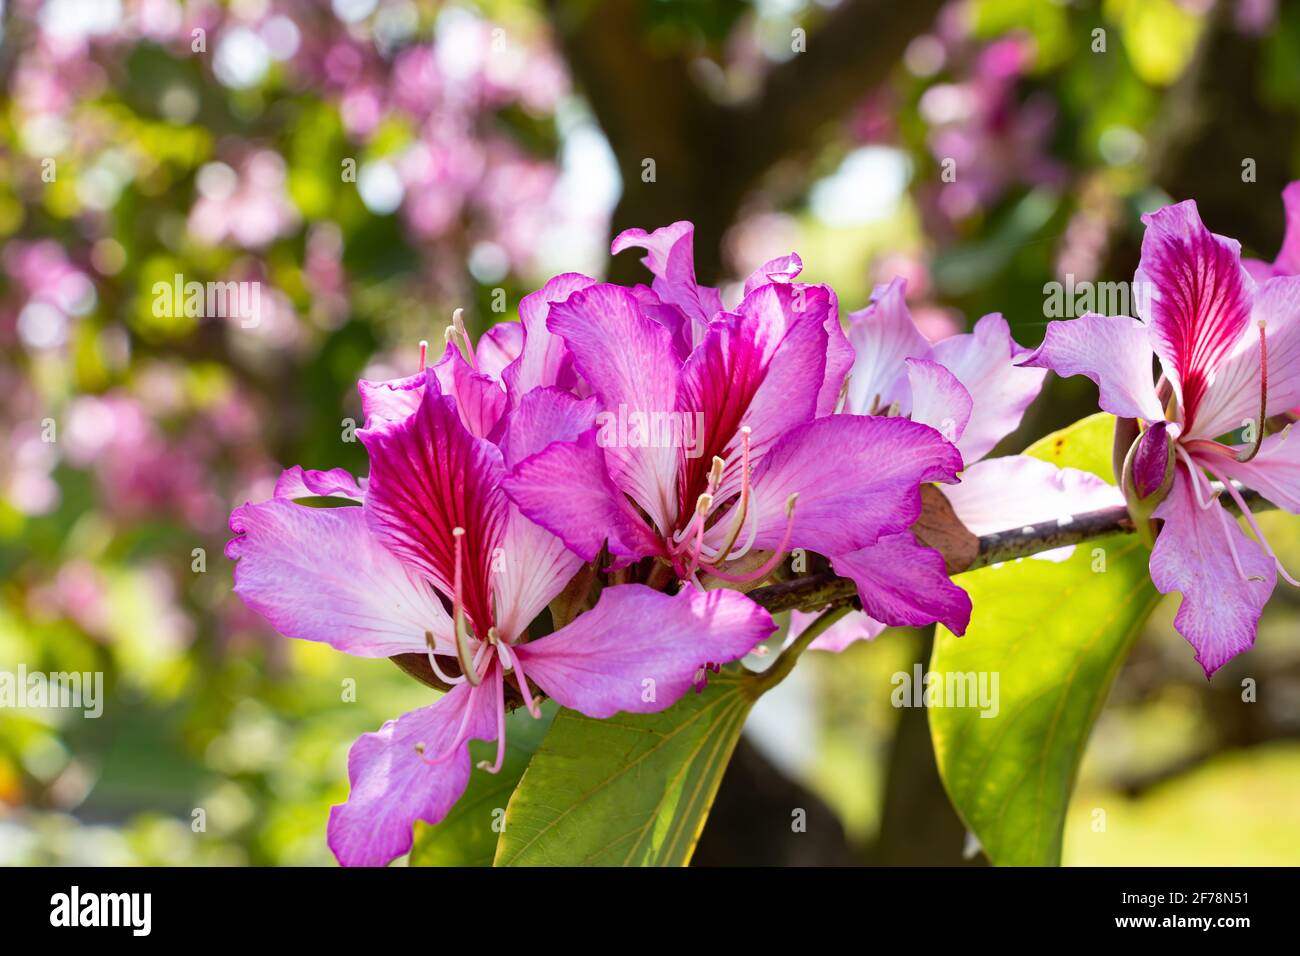 Bauhinia variegata est une espèce de plante à fleurs de la famille des légumineuses, les Fabaceae. Il est originaire de Chine, d'Asie du Sud-est et du sous-continent indien. Commo Banque D'Images